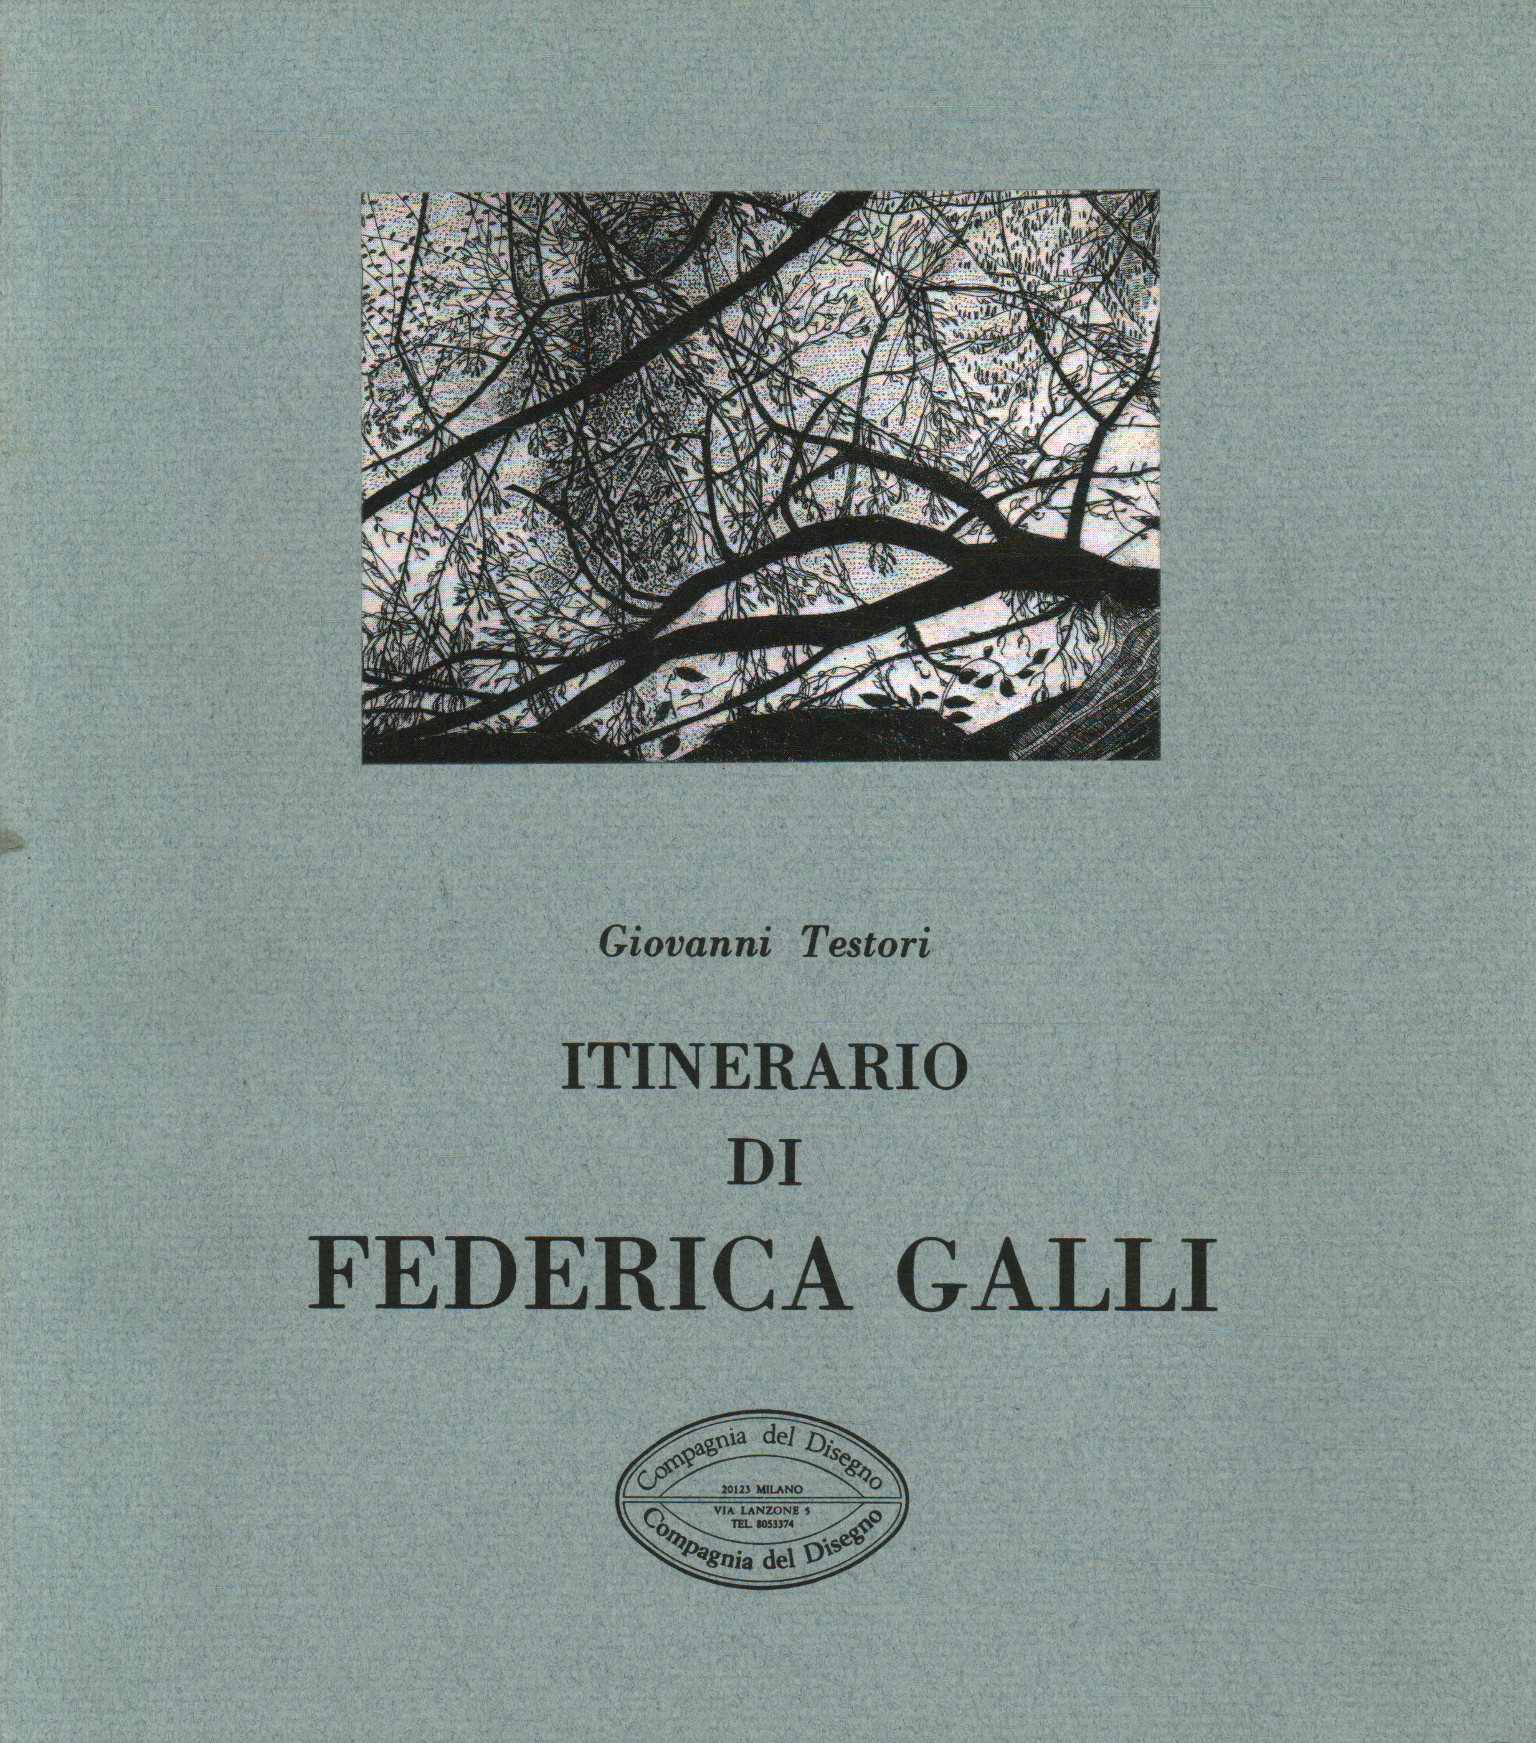 Die Reiseroute von Federica Galli